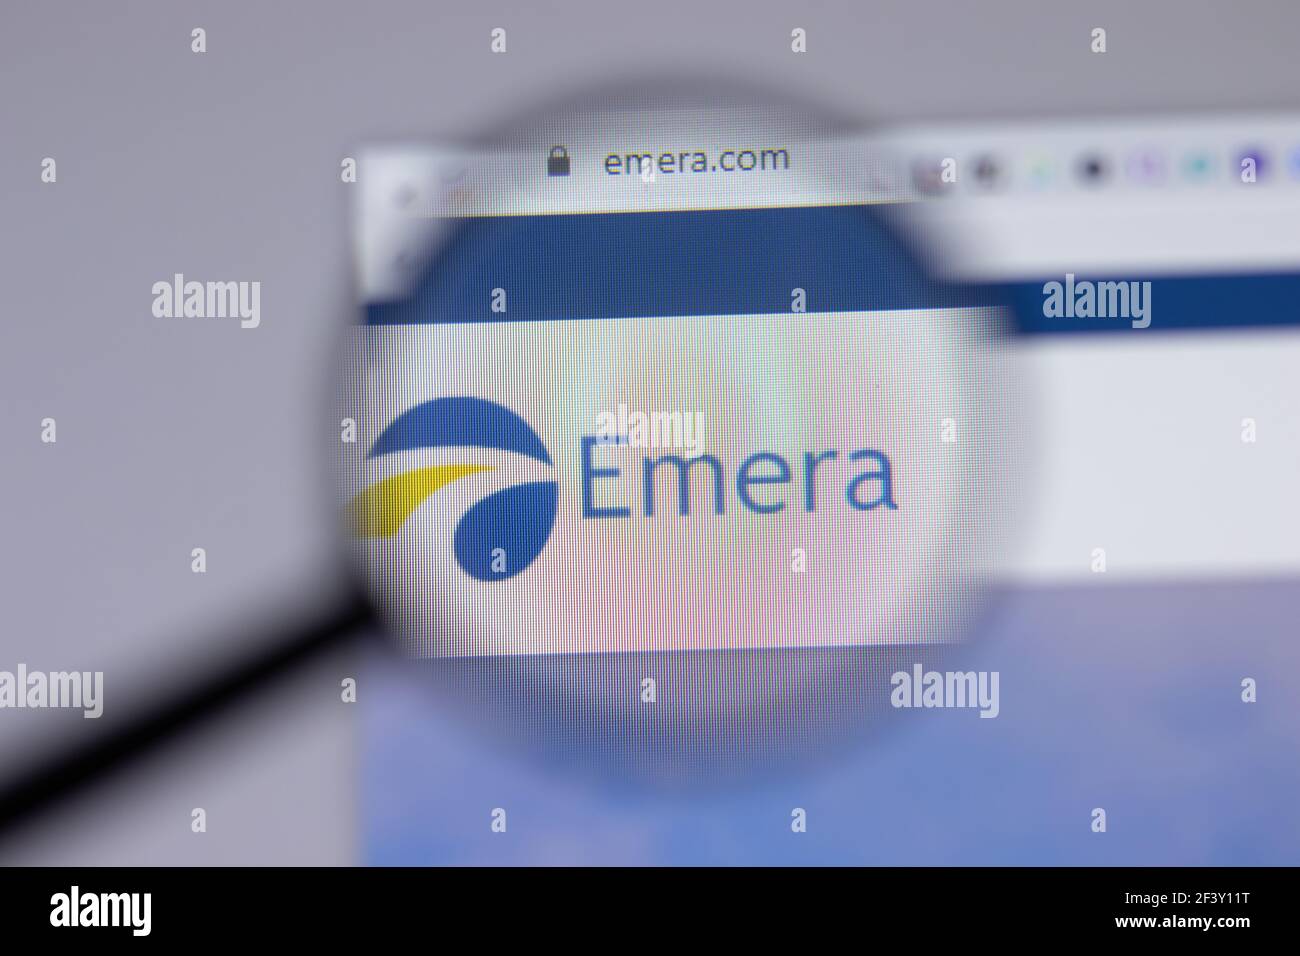 New York, USA - 18 Marzo 2021: Icona del logo aziendale di Emera sul sito, Editoriale illustrativo Foto Stock